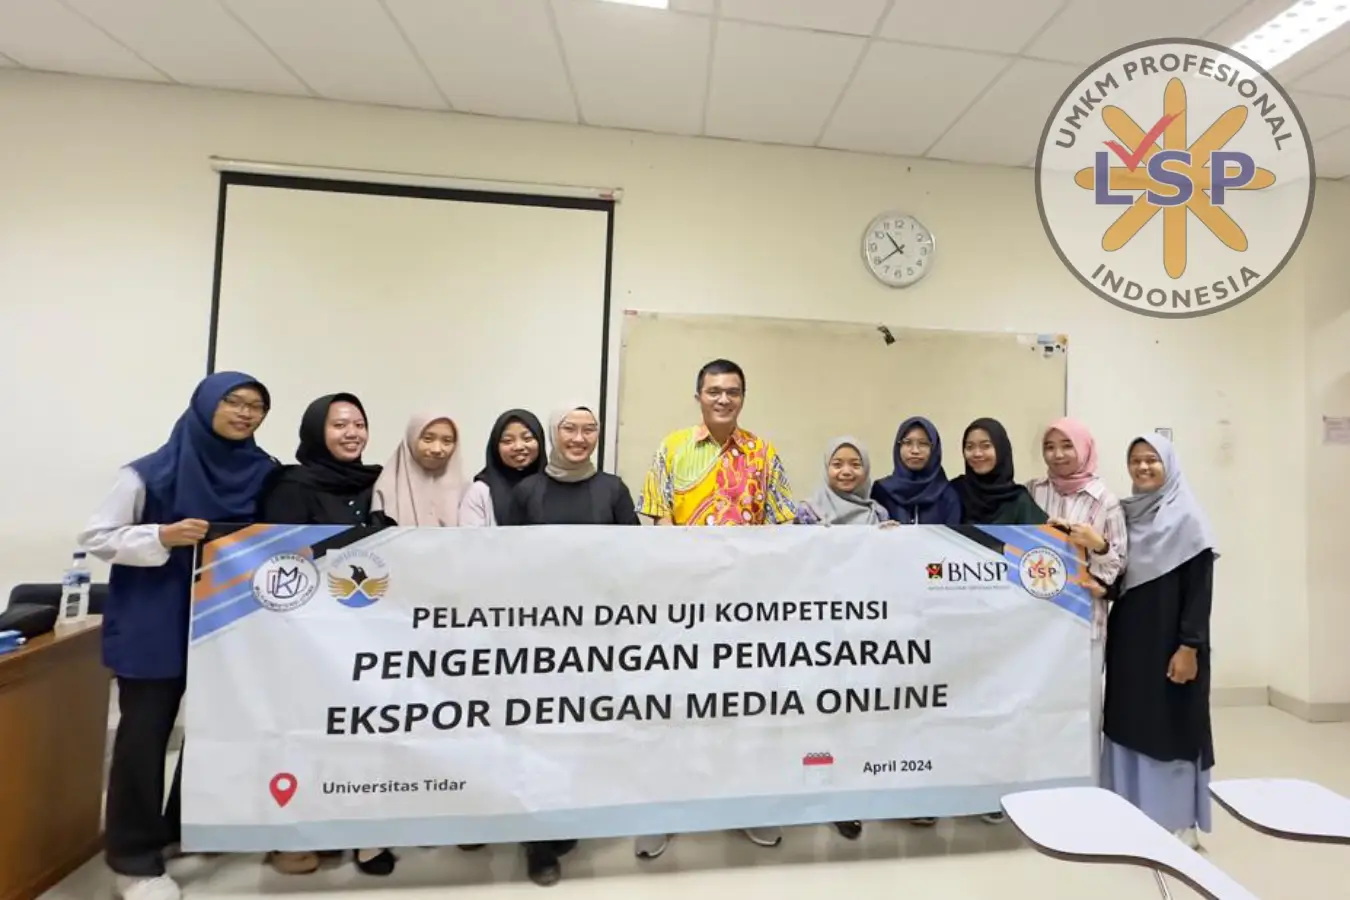 Pelaksanaan Uji Kompetensi Dengan Skema Pengembangan Pemasaran Ekspor Dengan Media Online yang Dilaksanakan di Fakultas Ekonomi Universitas Tidar Magelang